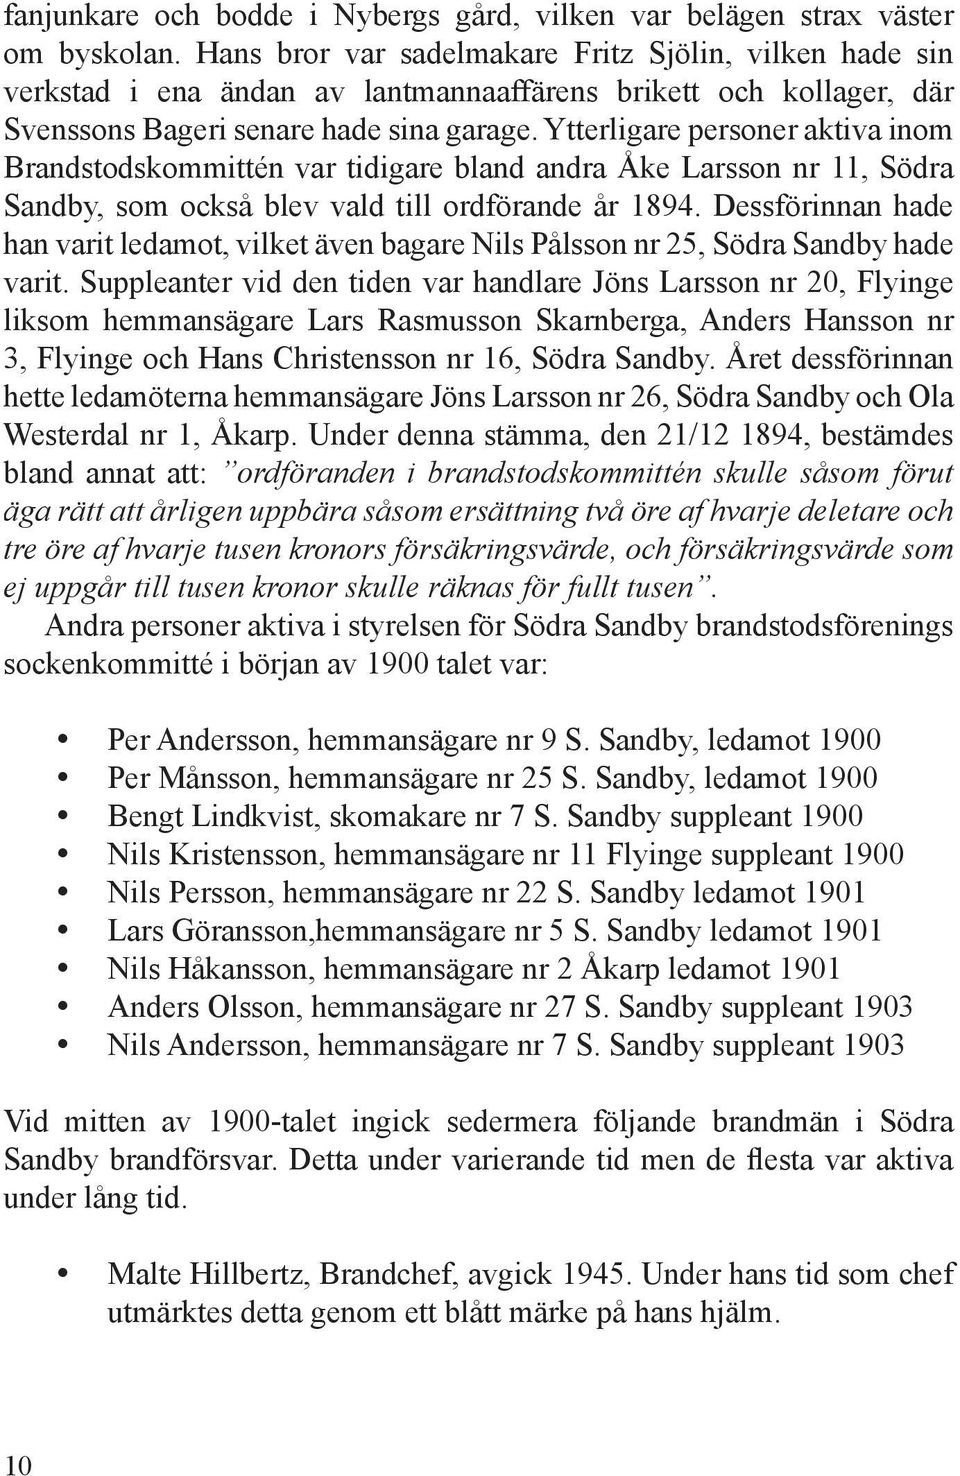 Ytterligare personer aktiva inom Brandstodskommittén var tidigare bland andra Åke Larsson nr 11, Södra Sandby, som också blev vald till ordförande år 1894.